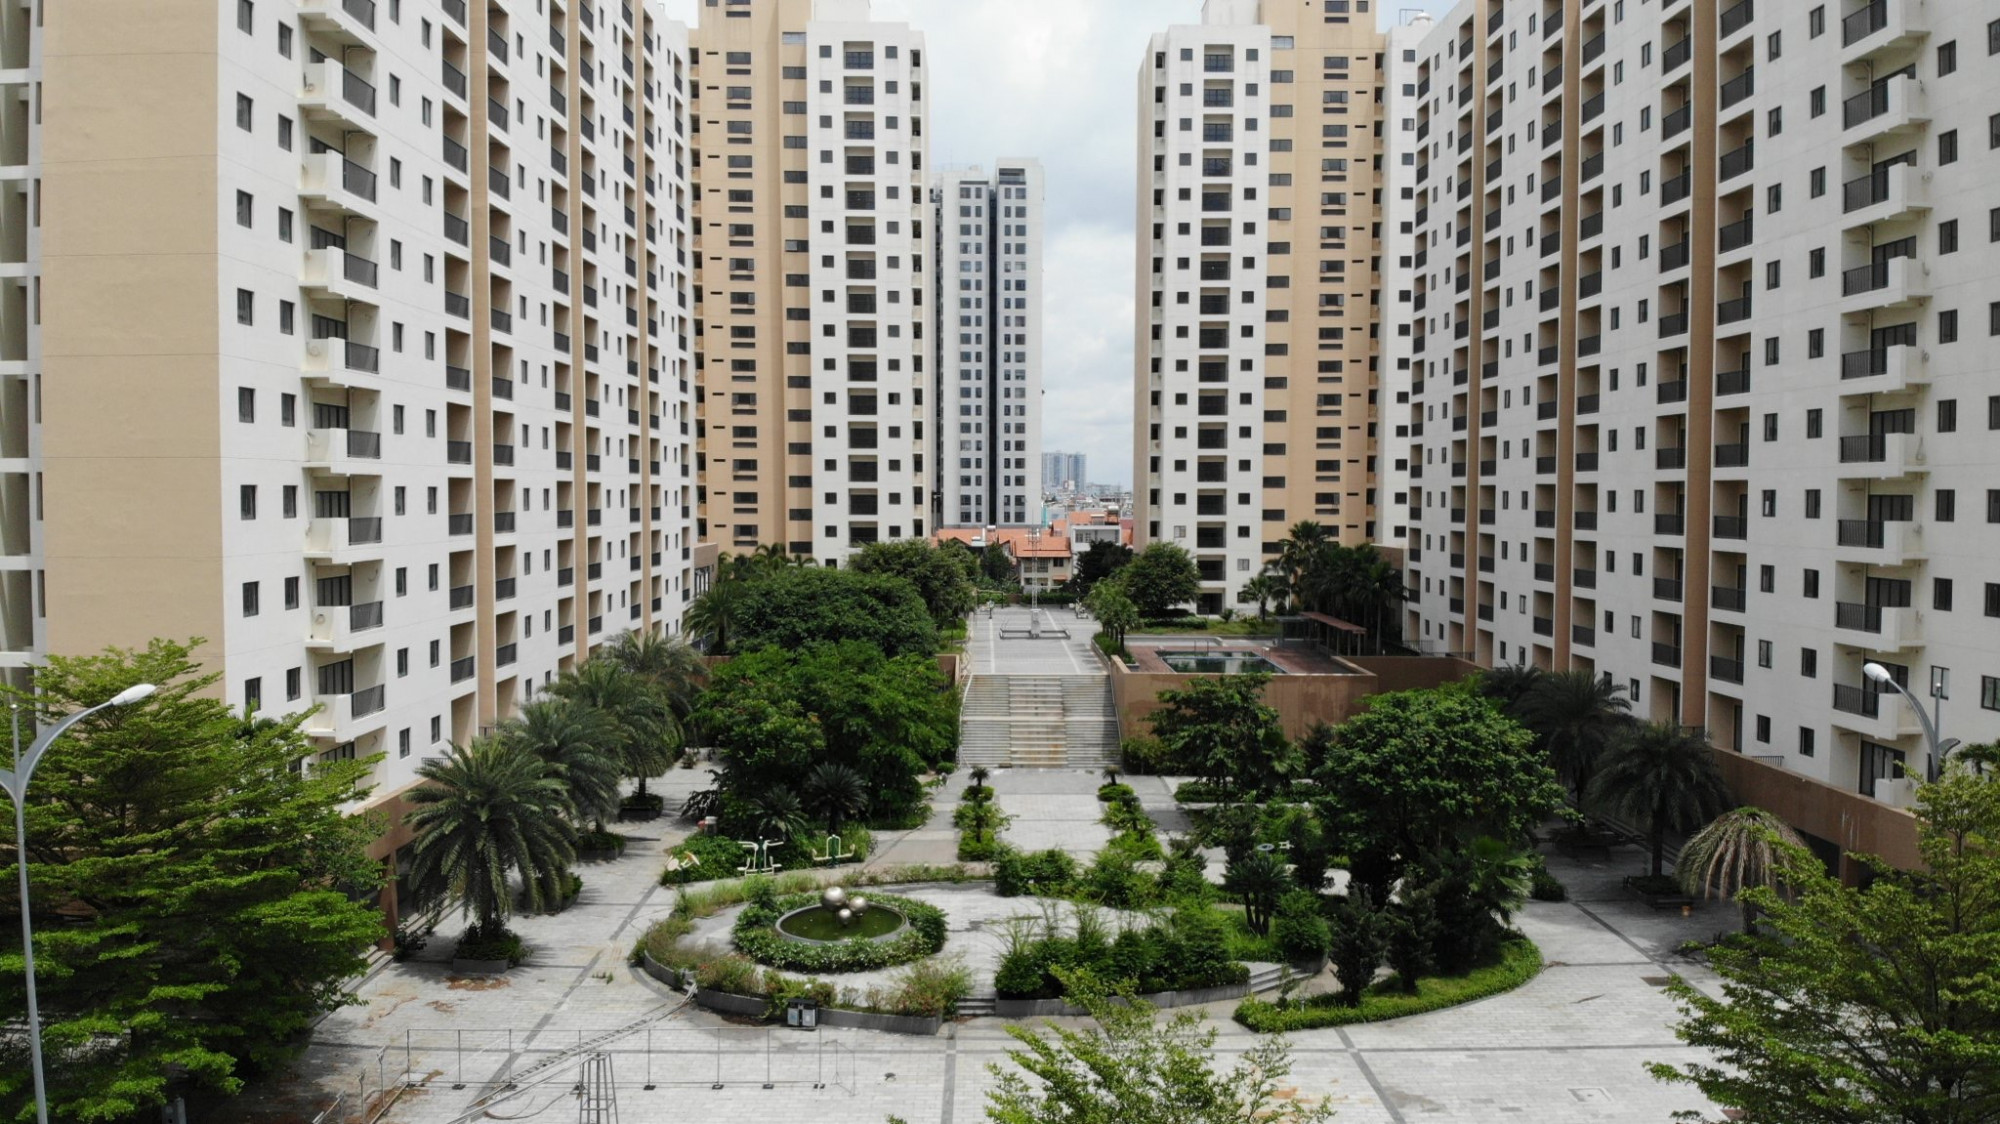 3.790 căn hộ ngay trung tâm Khu đô thị mới Thủ Thiêm xây xong bỏ hoang nhiều năm gây lãng phí